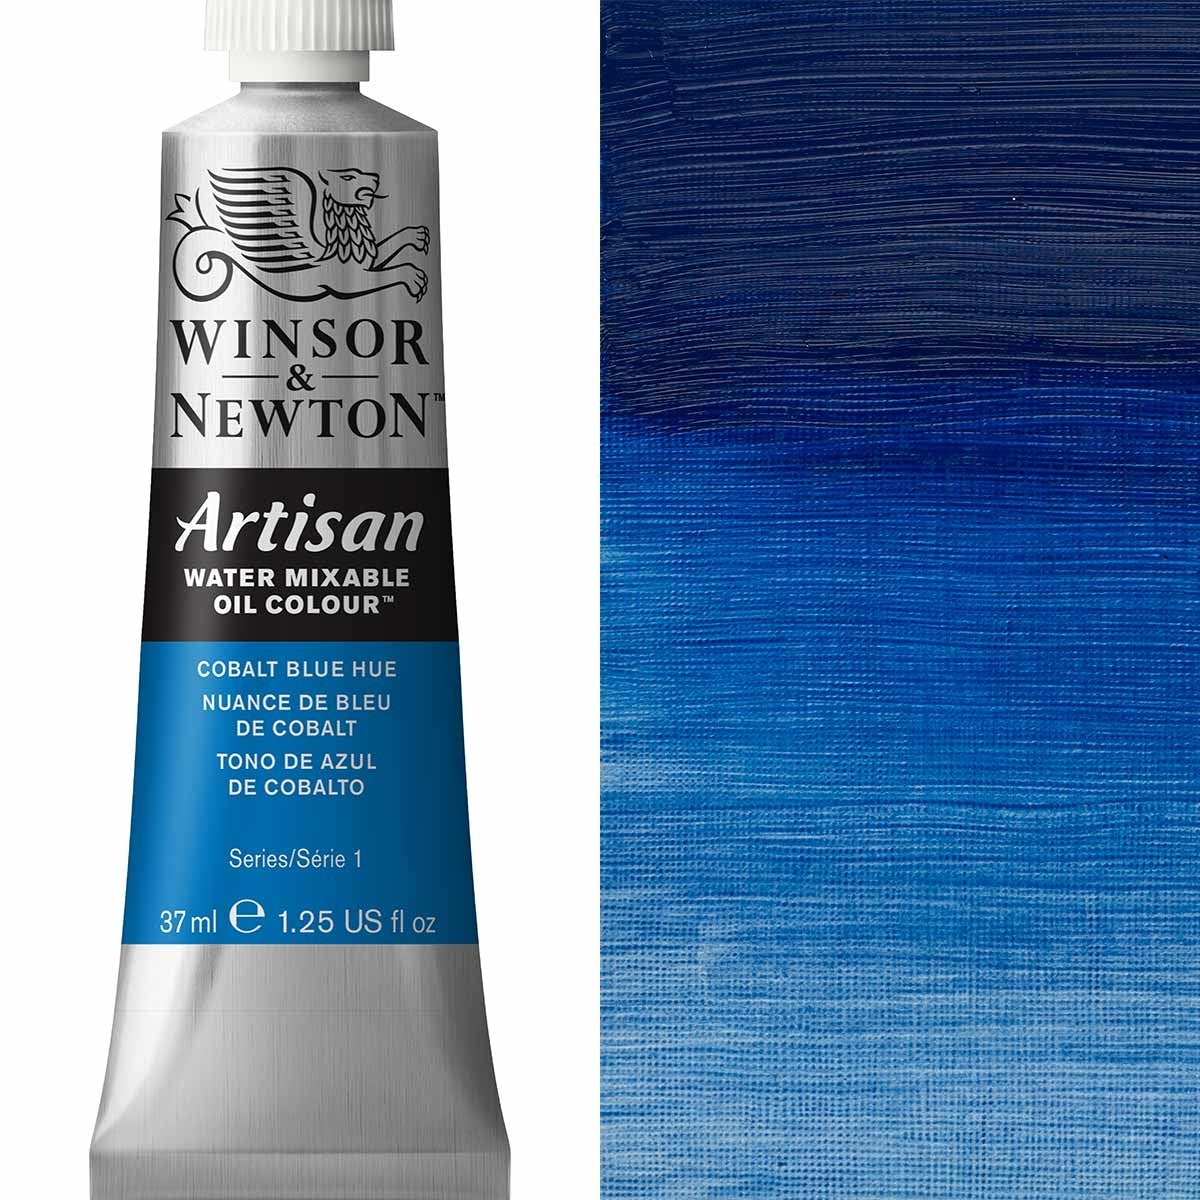 Winsor et Newton - Couleur d'huile artisanale Watermixable - 37 ml - Cobalt Blue Hue